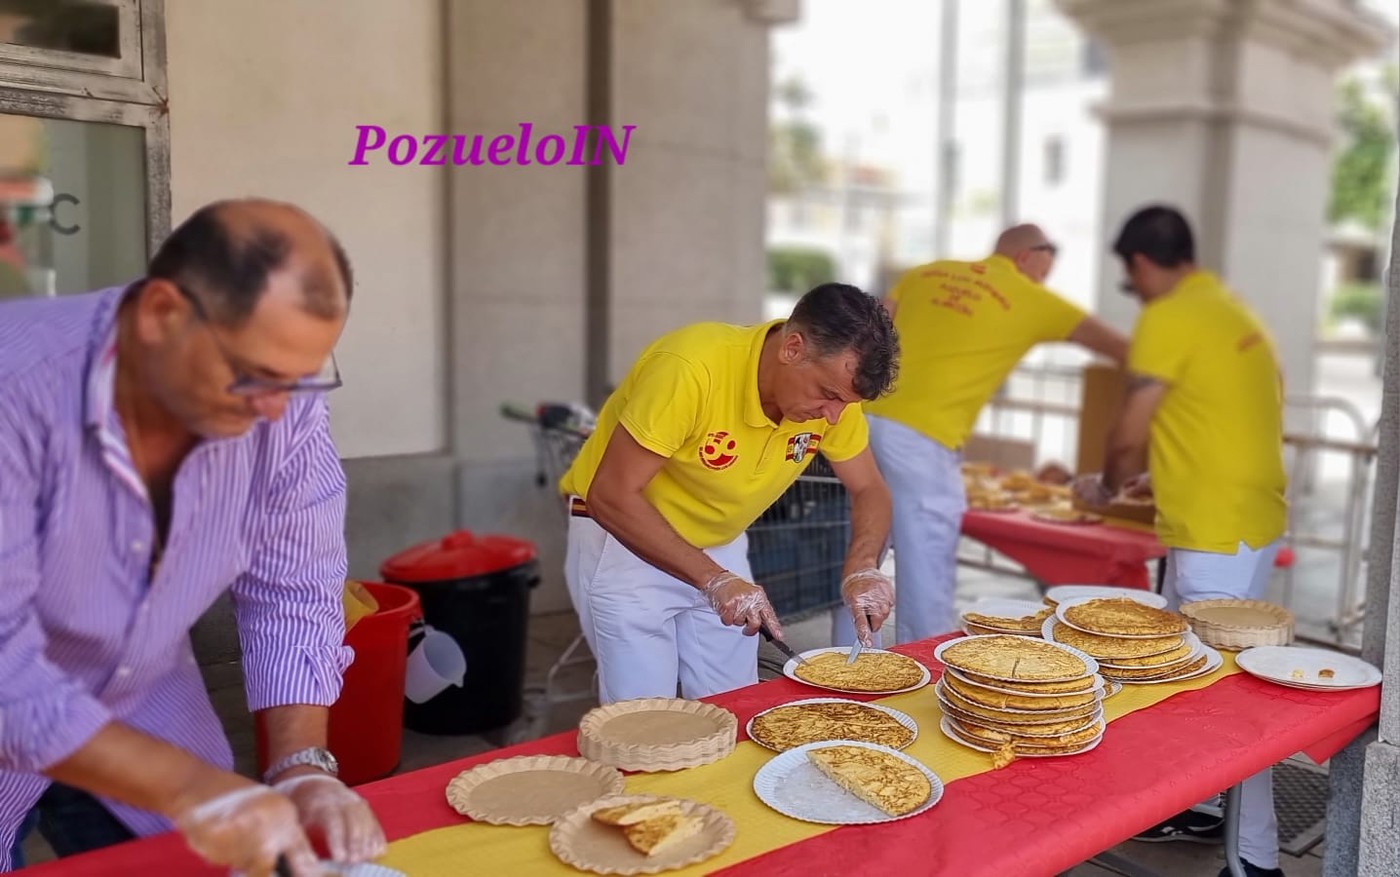 Concurso de tortillas en Pozuelo